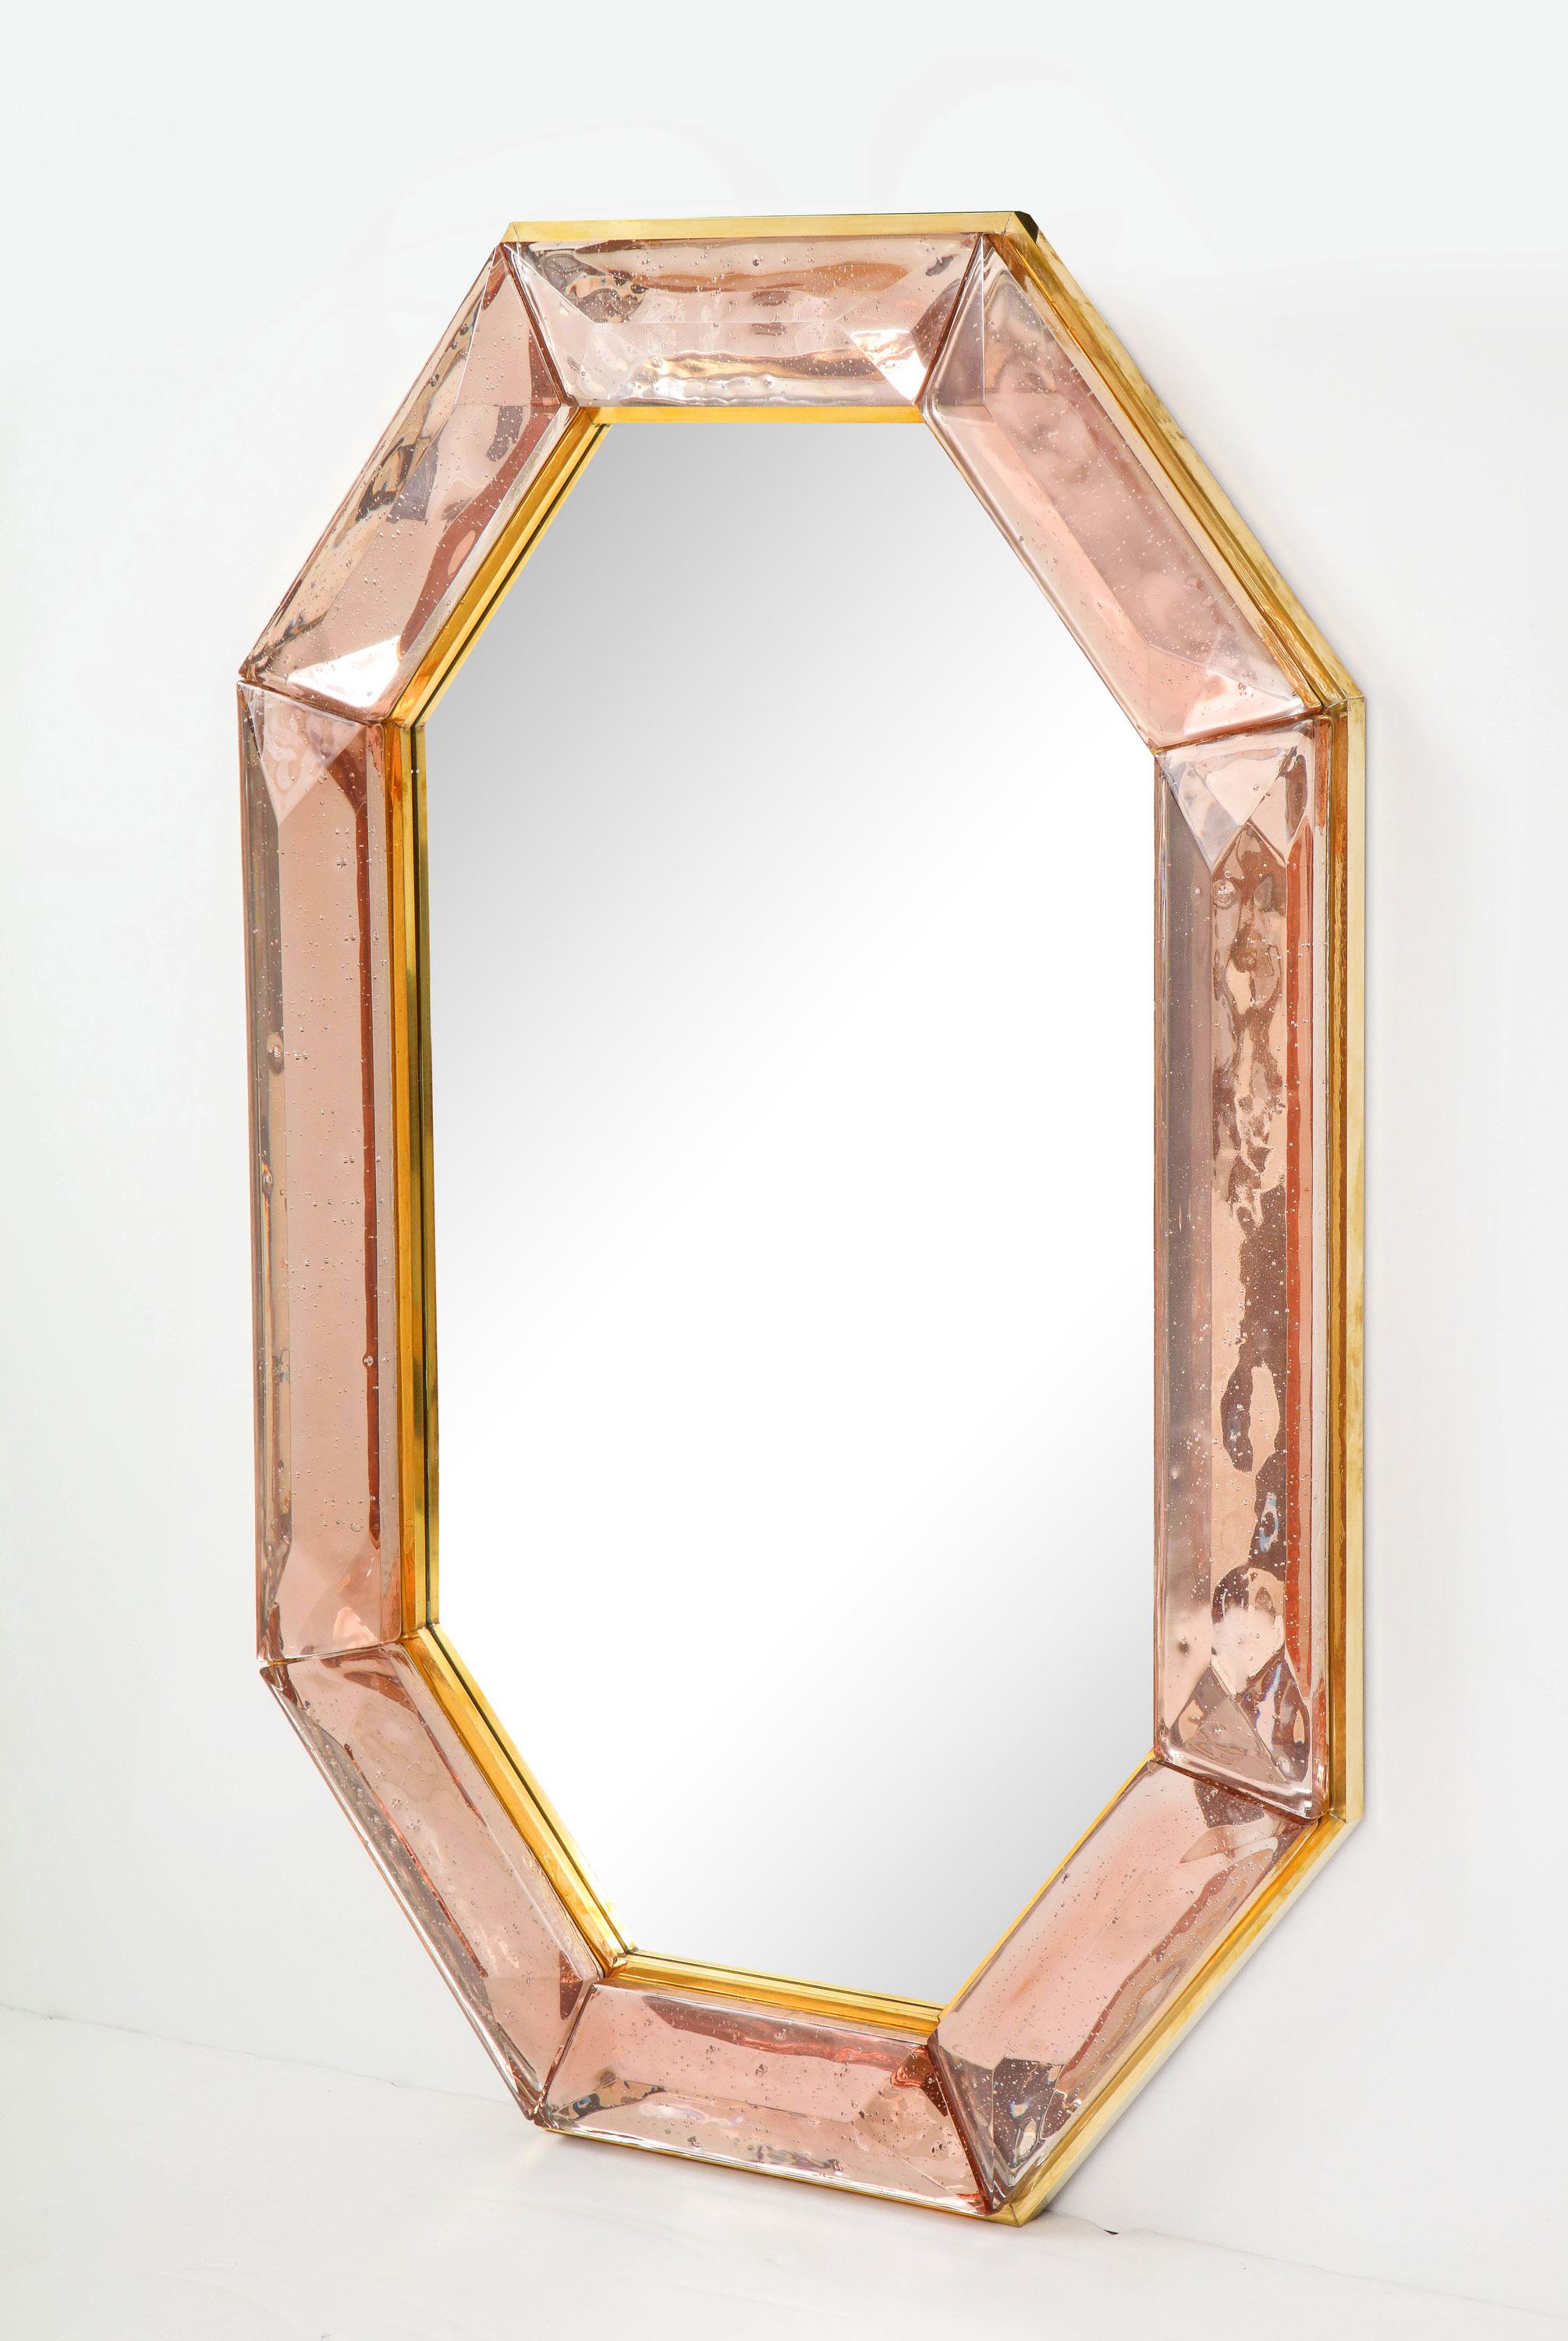 Paire de miroirs octogonaux sur mesure en verre de Murano rose, en stock
Bloc de verre d'un rose vif et intense avec des inclusions d'air d'origine naturelle.
Motif à facettes hautement poli
(a) Gallery Gallery tout autour
Chaque miroir est un luxe